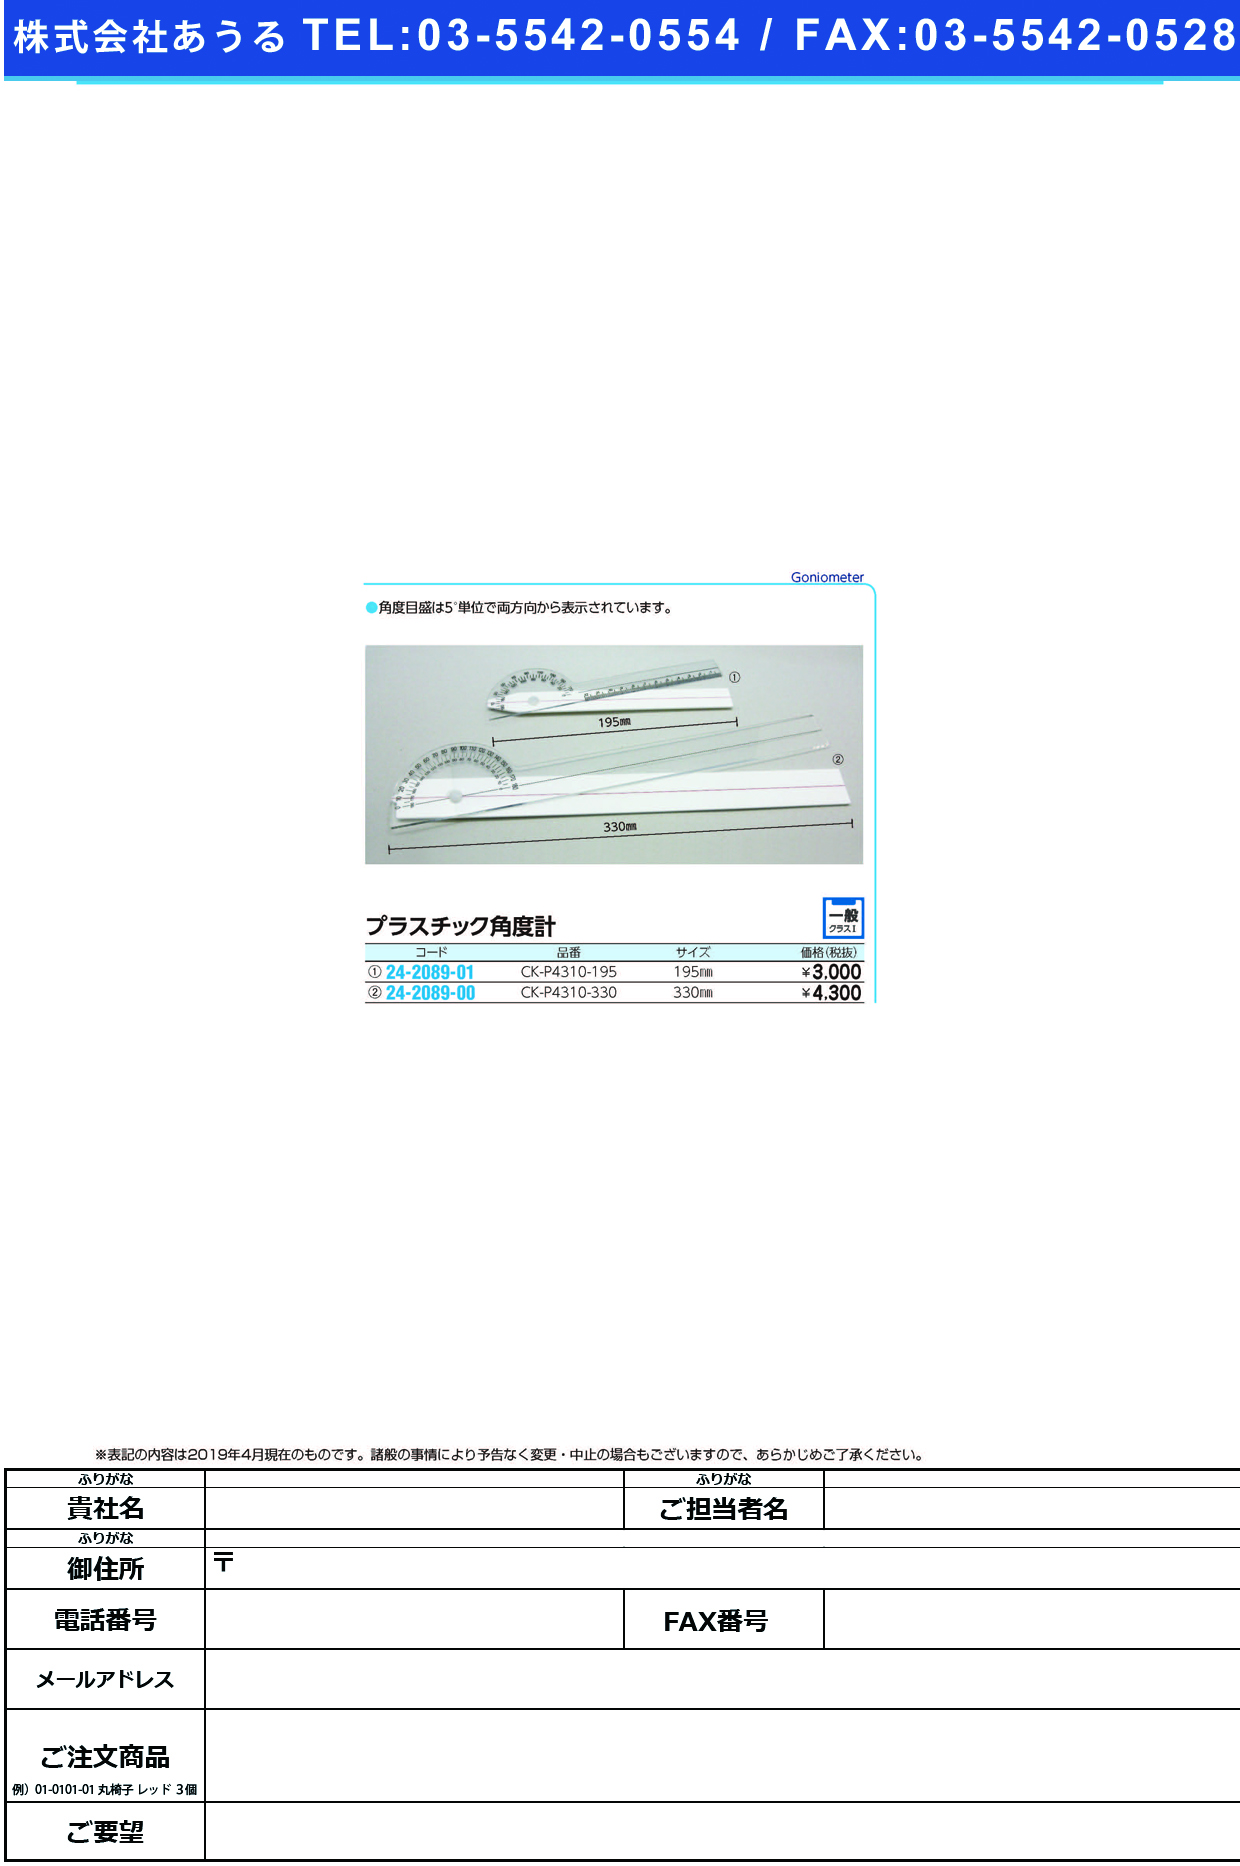 (24-2089-00)プラスチック角度計 CK-P4310-330(330MM) ﾌﾟﾗｽﾁｯｸｶｸﾄﾞｹｲ【1本単位】【2019年カタログ商品】